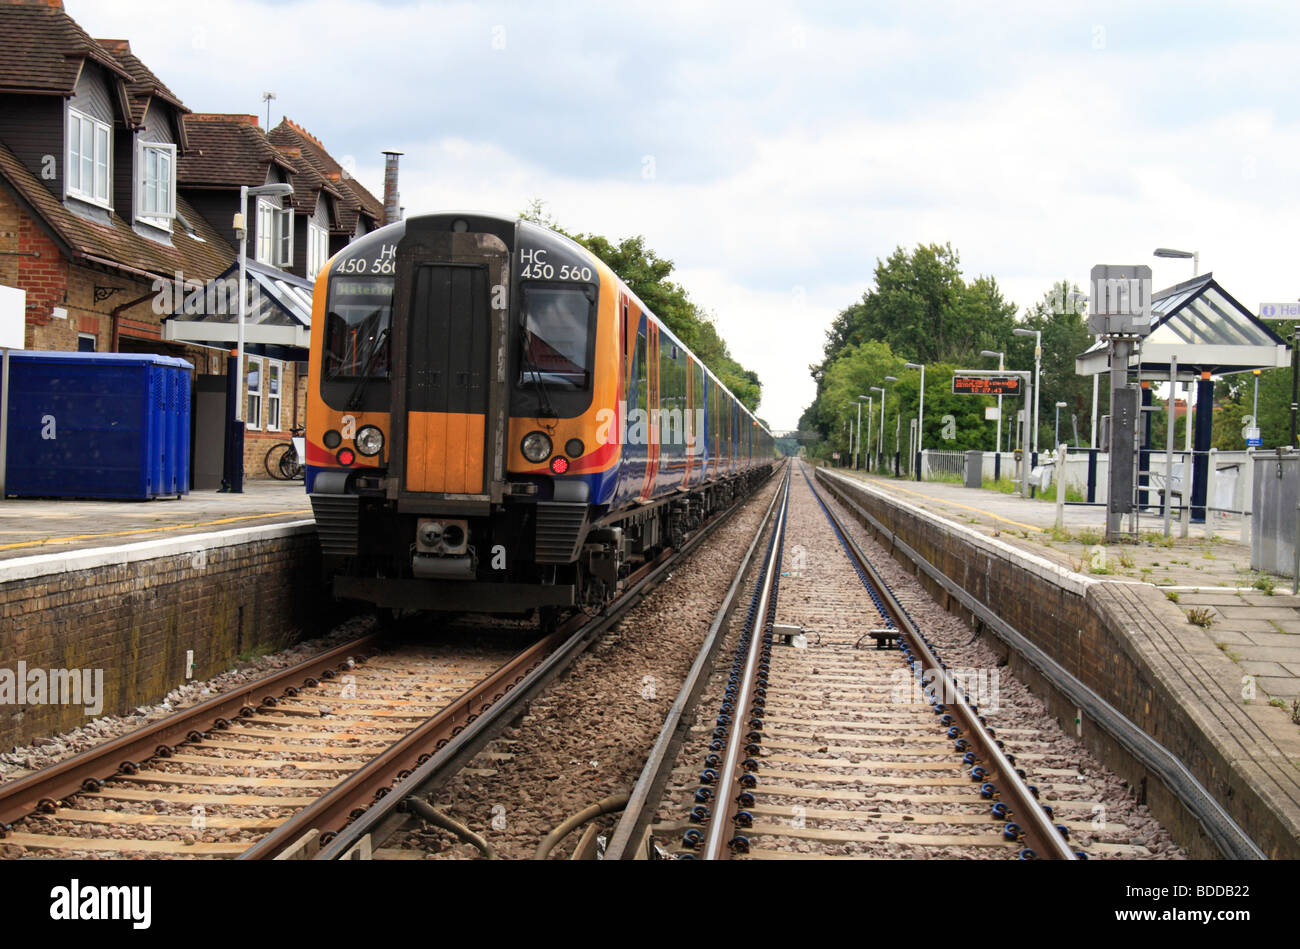 A sud ovest di treni treni pendolari resta in attesa presso la piattaforma a Datchet stazione ferroviaria, Berkshire, Regno Unito Foto Stock